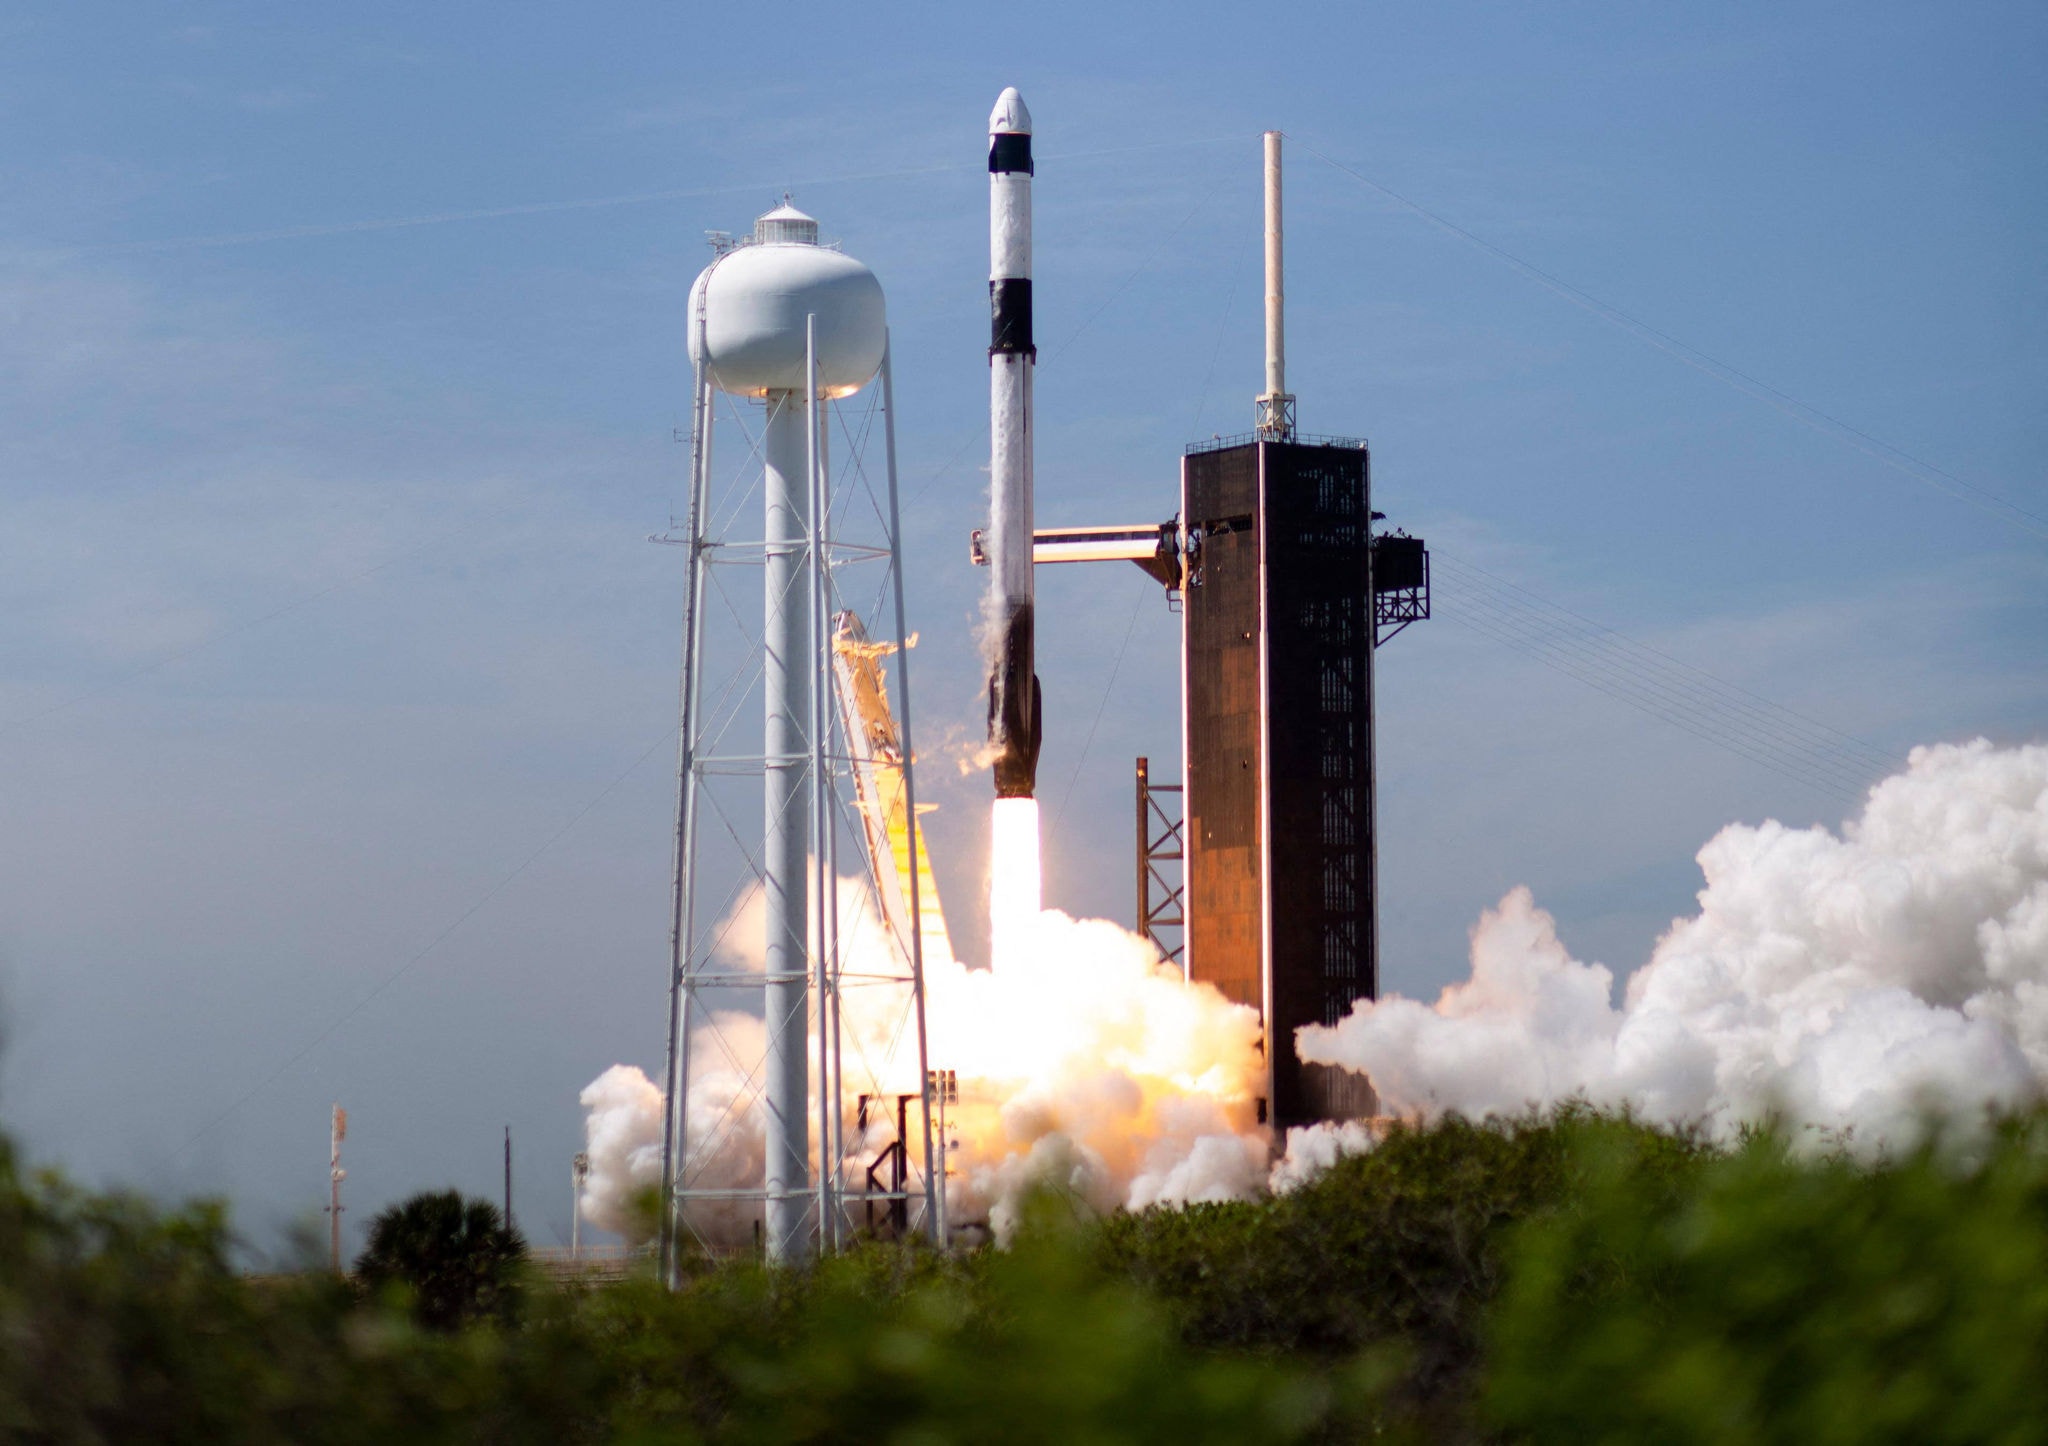 Foguete SpaceX decola na primeira missão totalmente privada à Estação Espacial Internacional